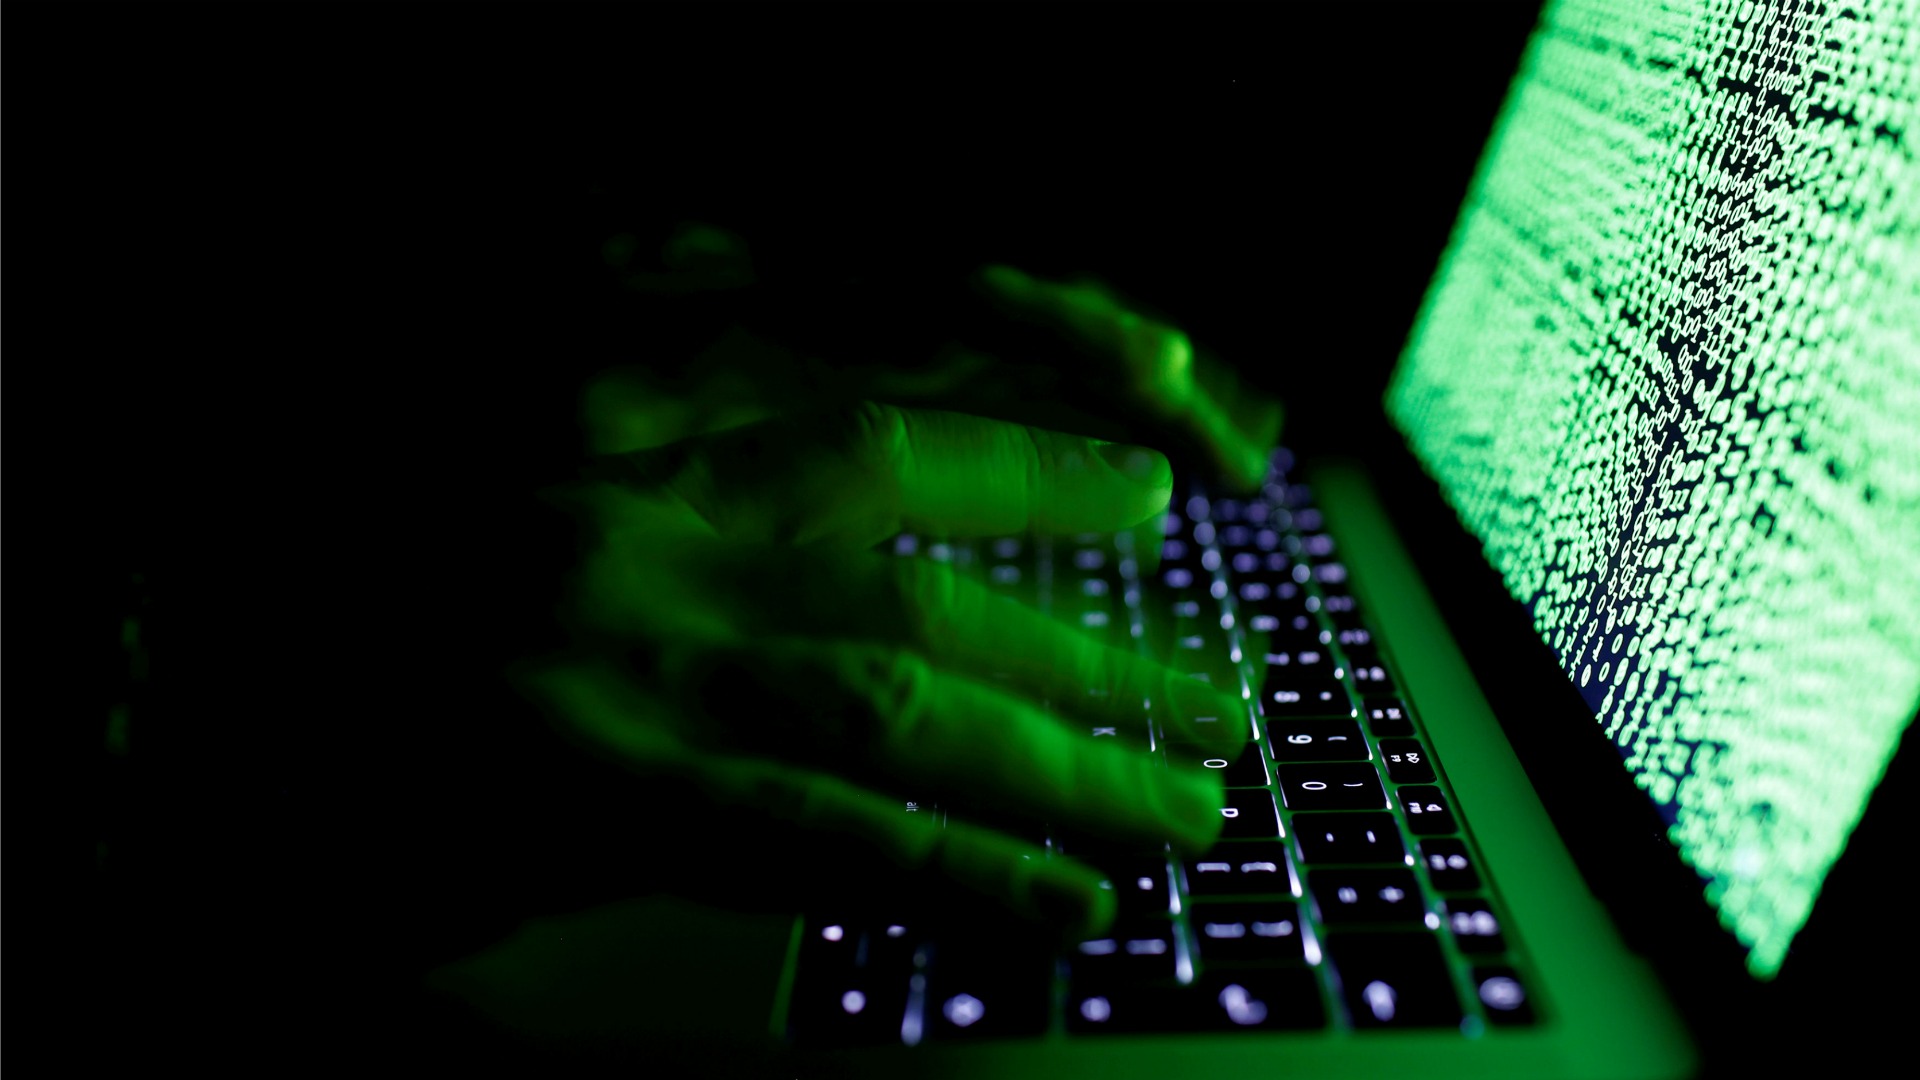 El ciberataque afecta a 200.000 víctimas en al menos 150 países, según Europol